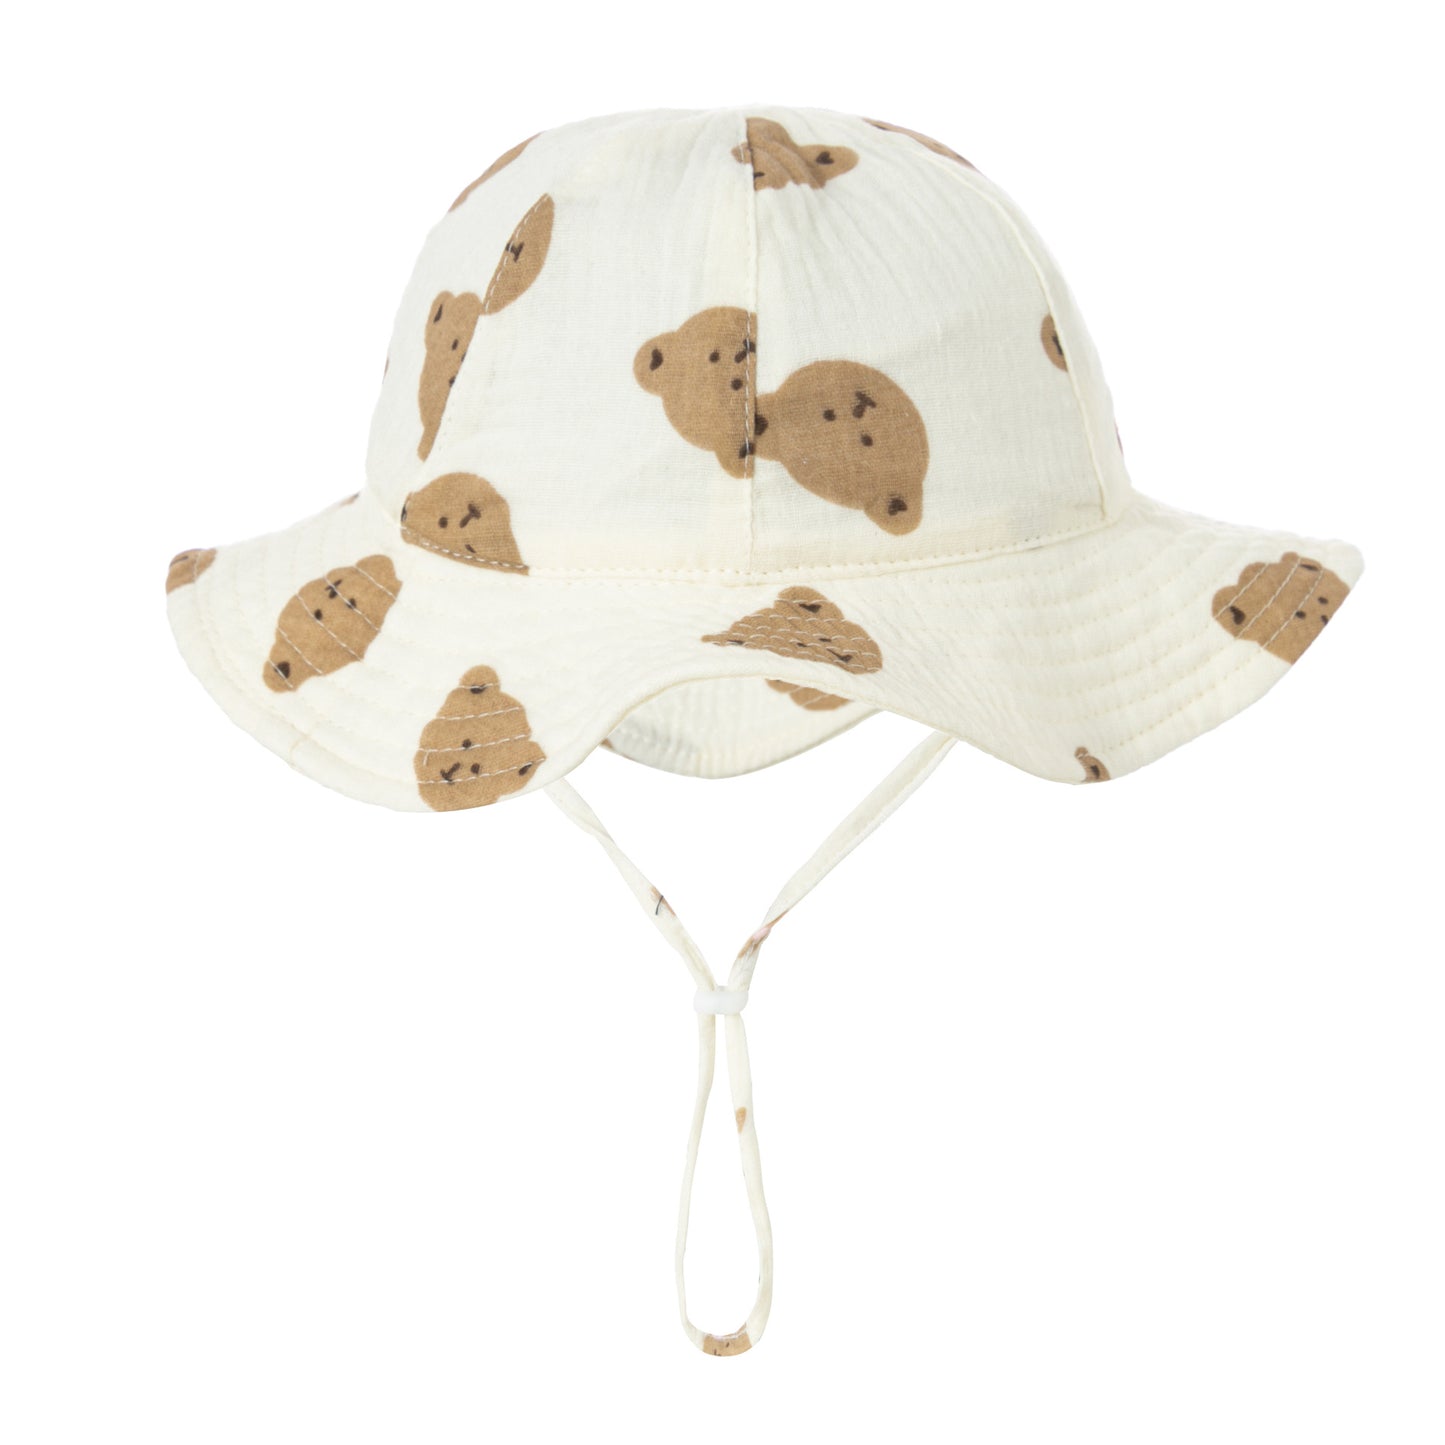 0-12M Baby Cotton Bucket Hat Cotton Gauze Breathable Boy Girl Newborn Kid Accessories